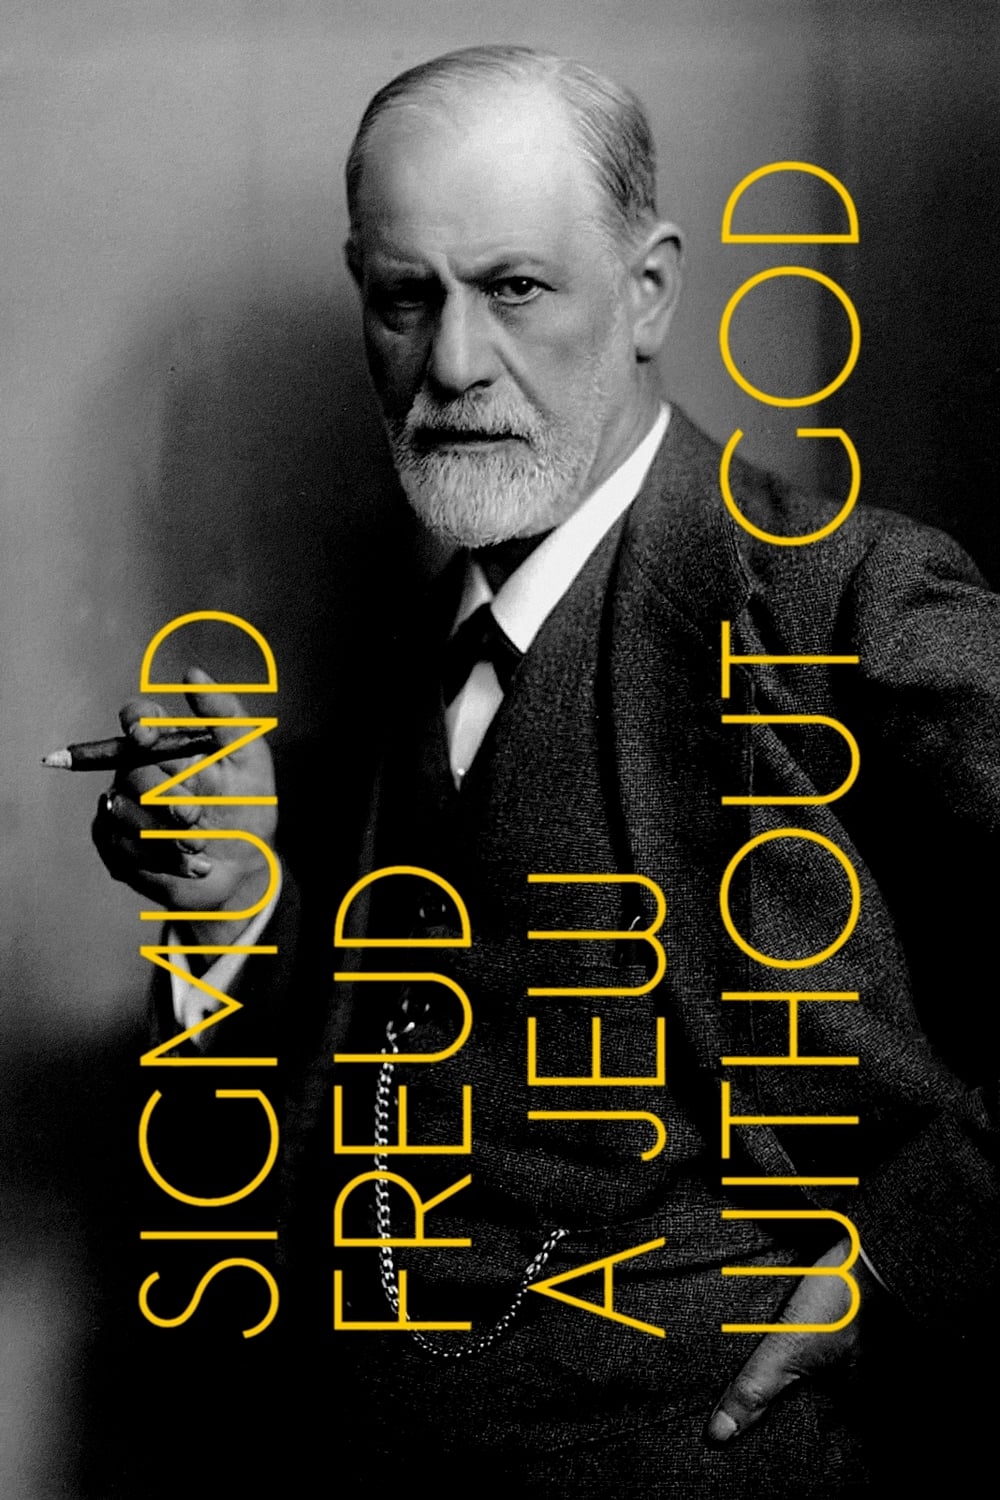 Sigmund Freud: A Jew Without God